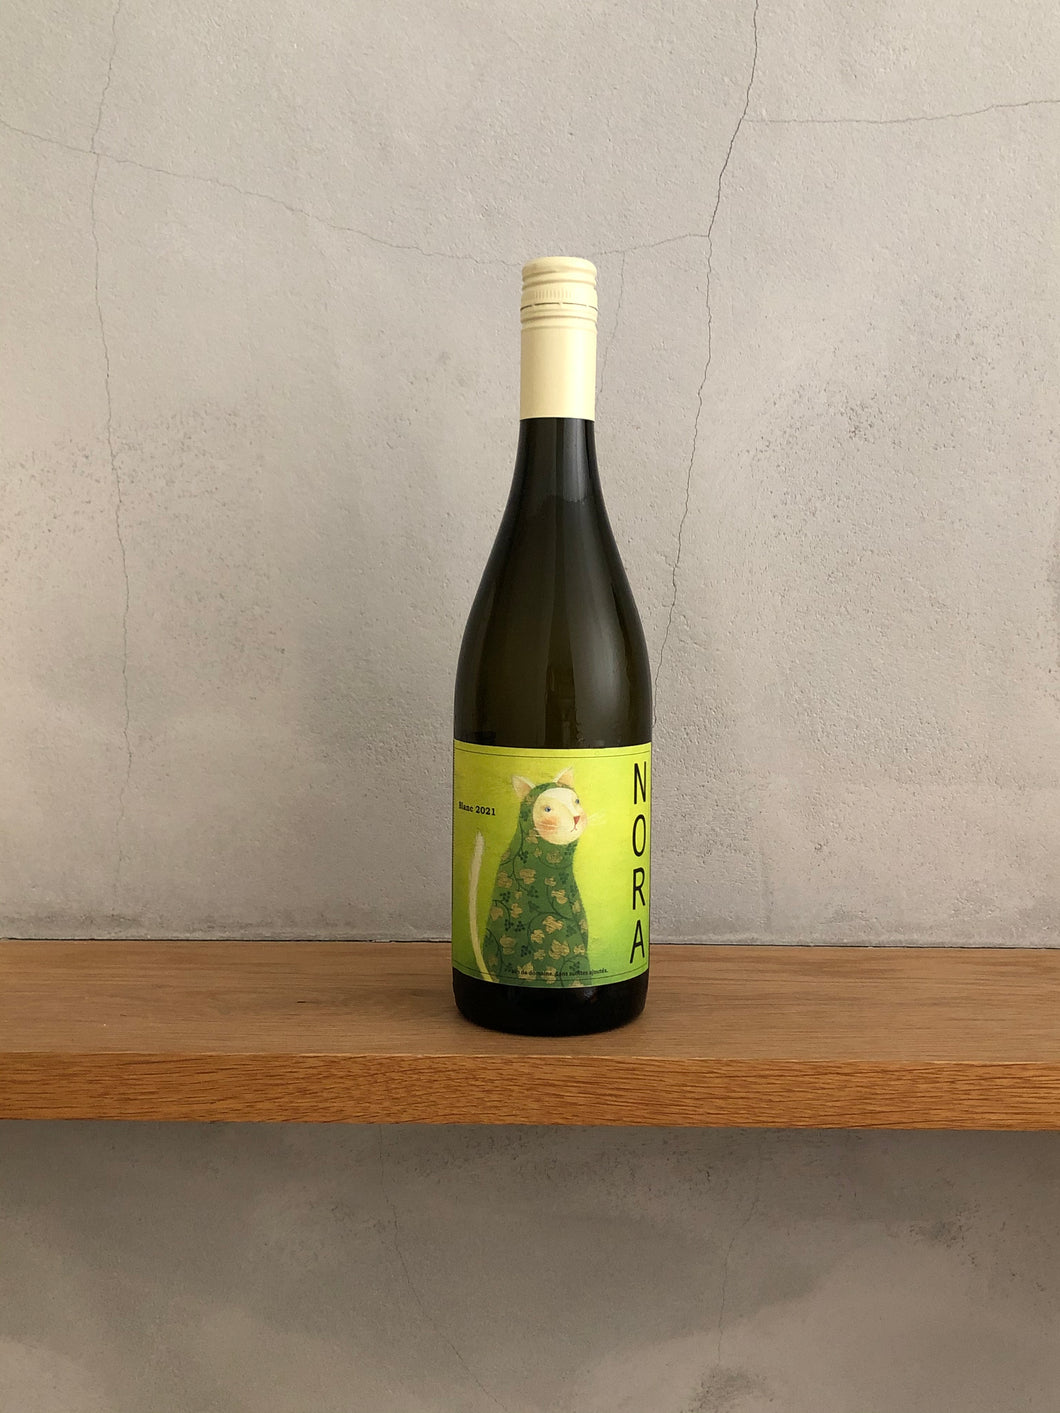 農楽蔵（のらくら） ノラ・ブラン - ワイン